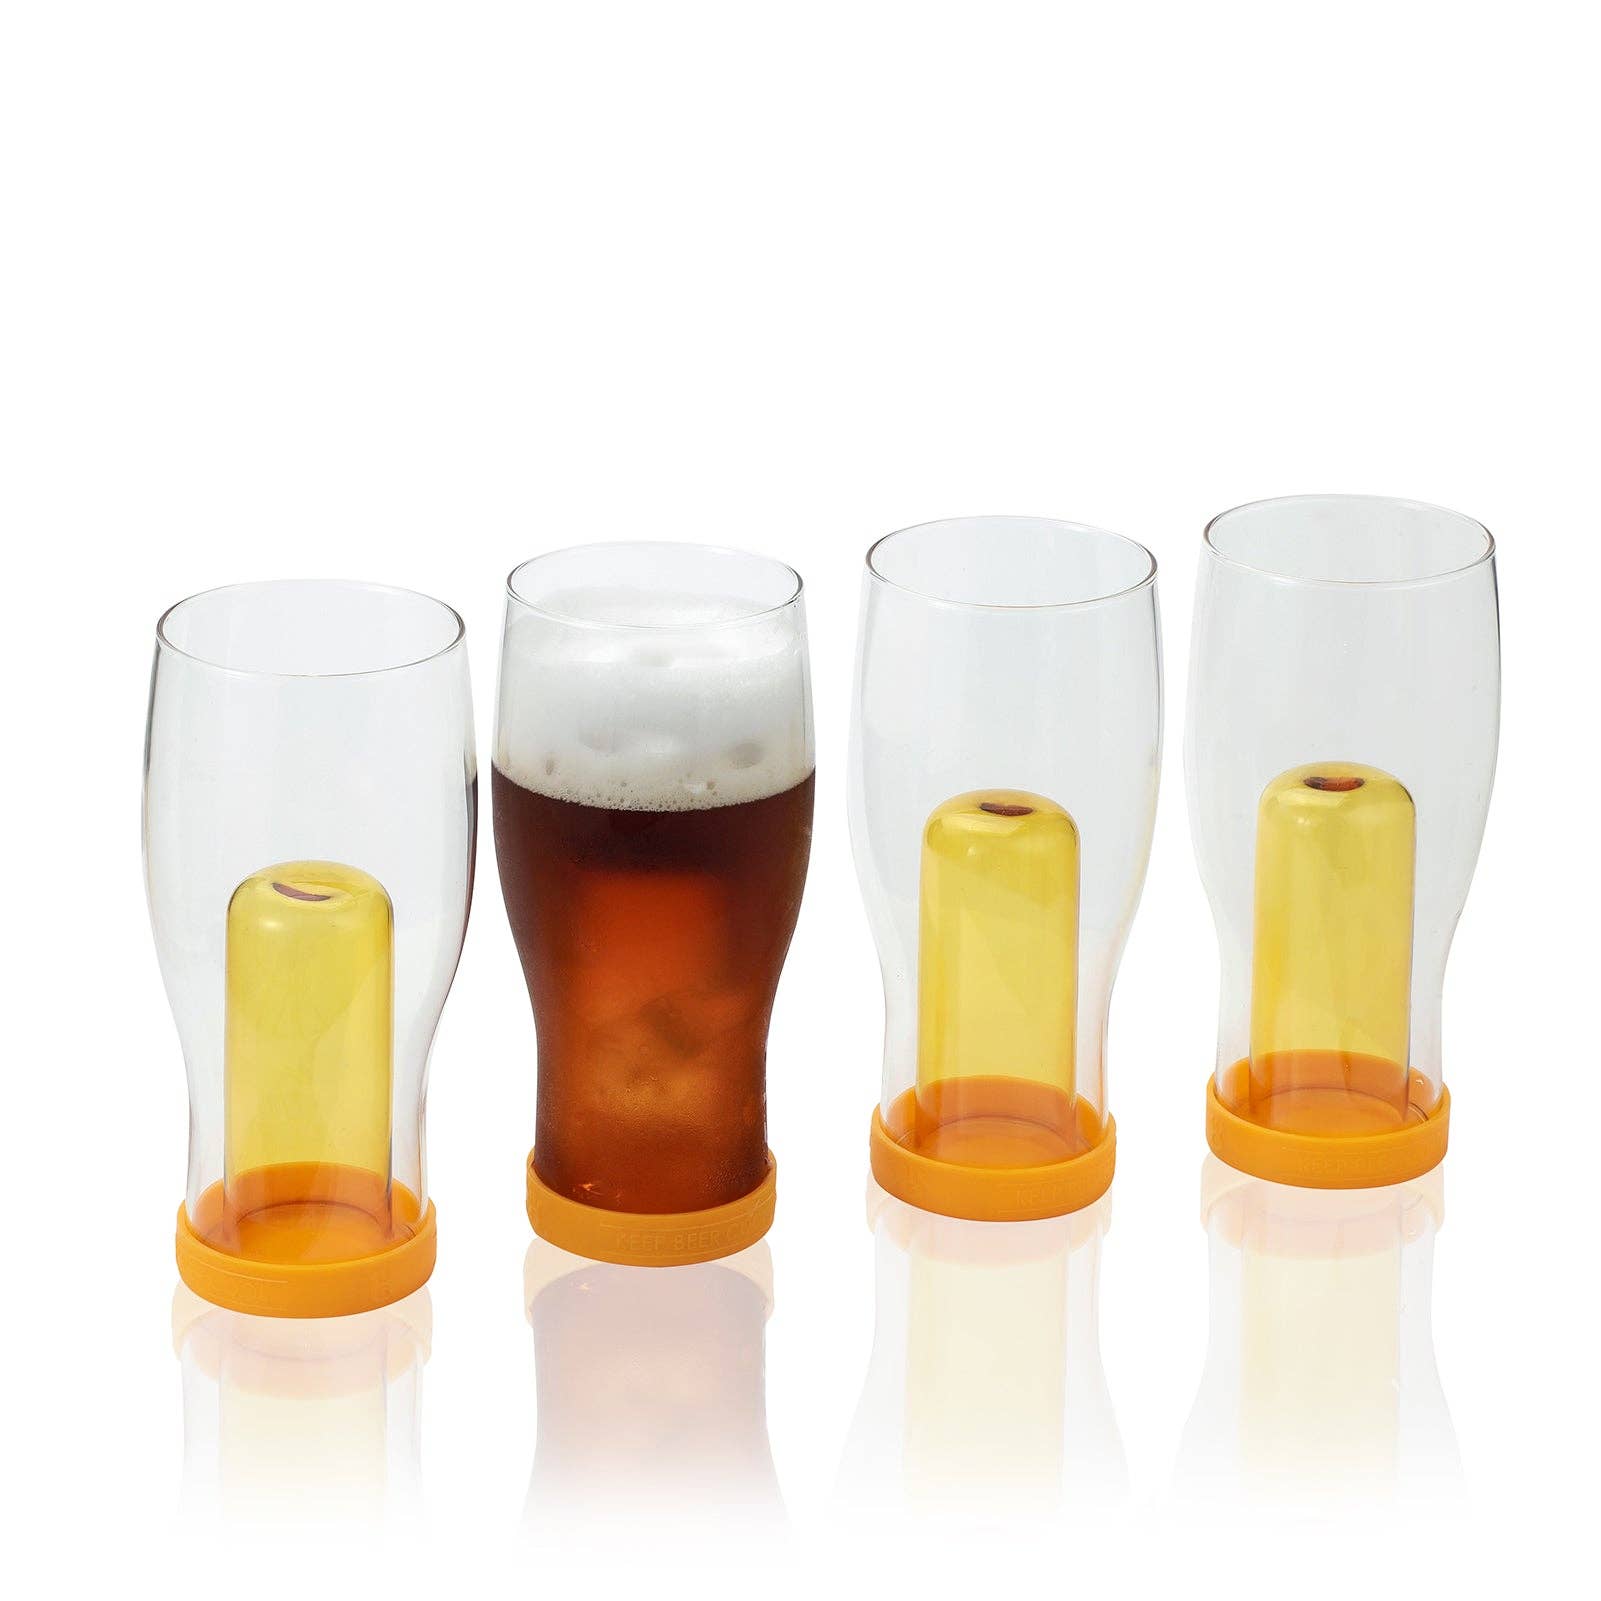 Mugs/Highball/Beer Glasses Pre-Designed Teach Love Inspire JoyJolt